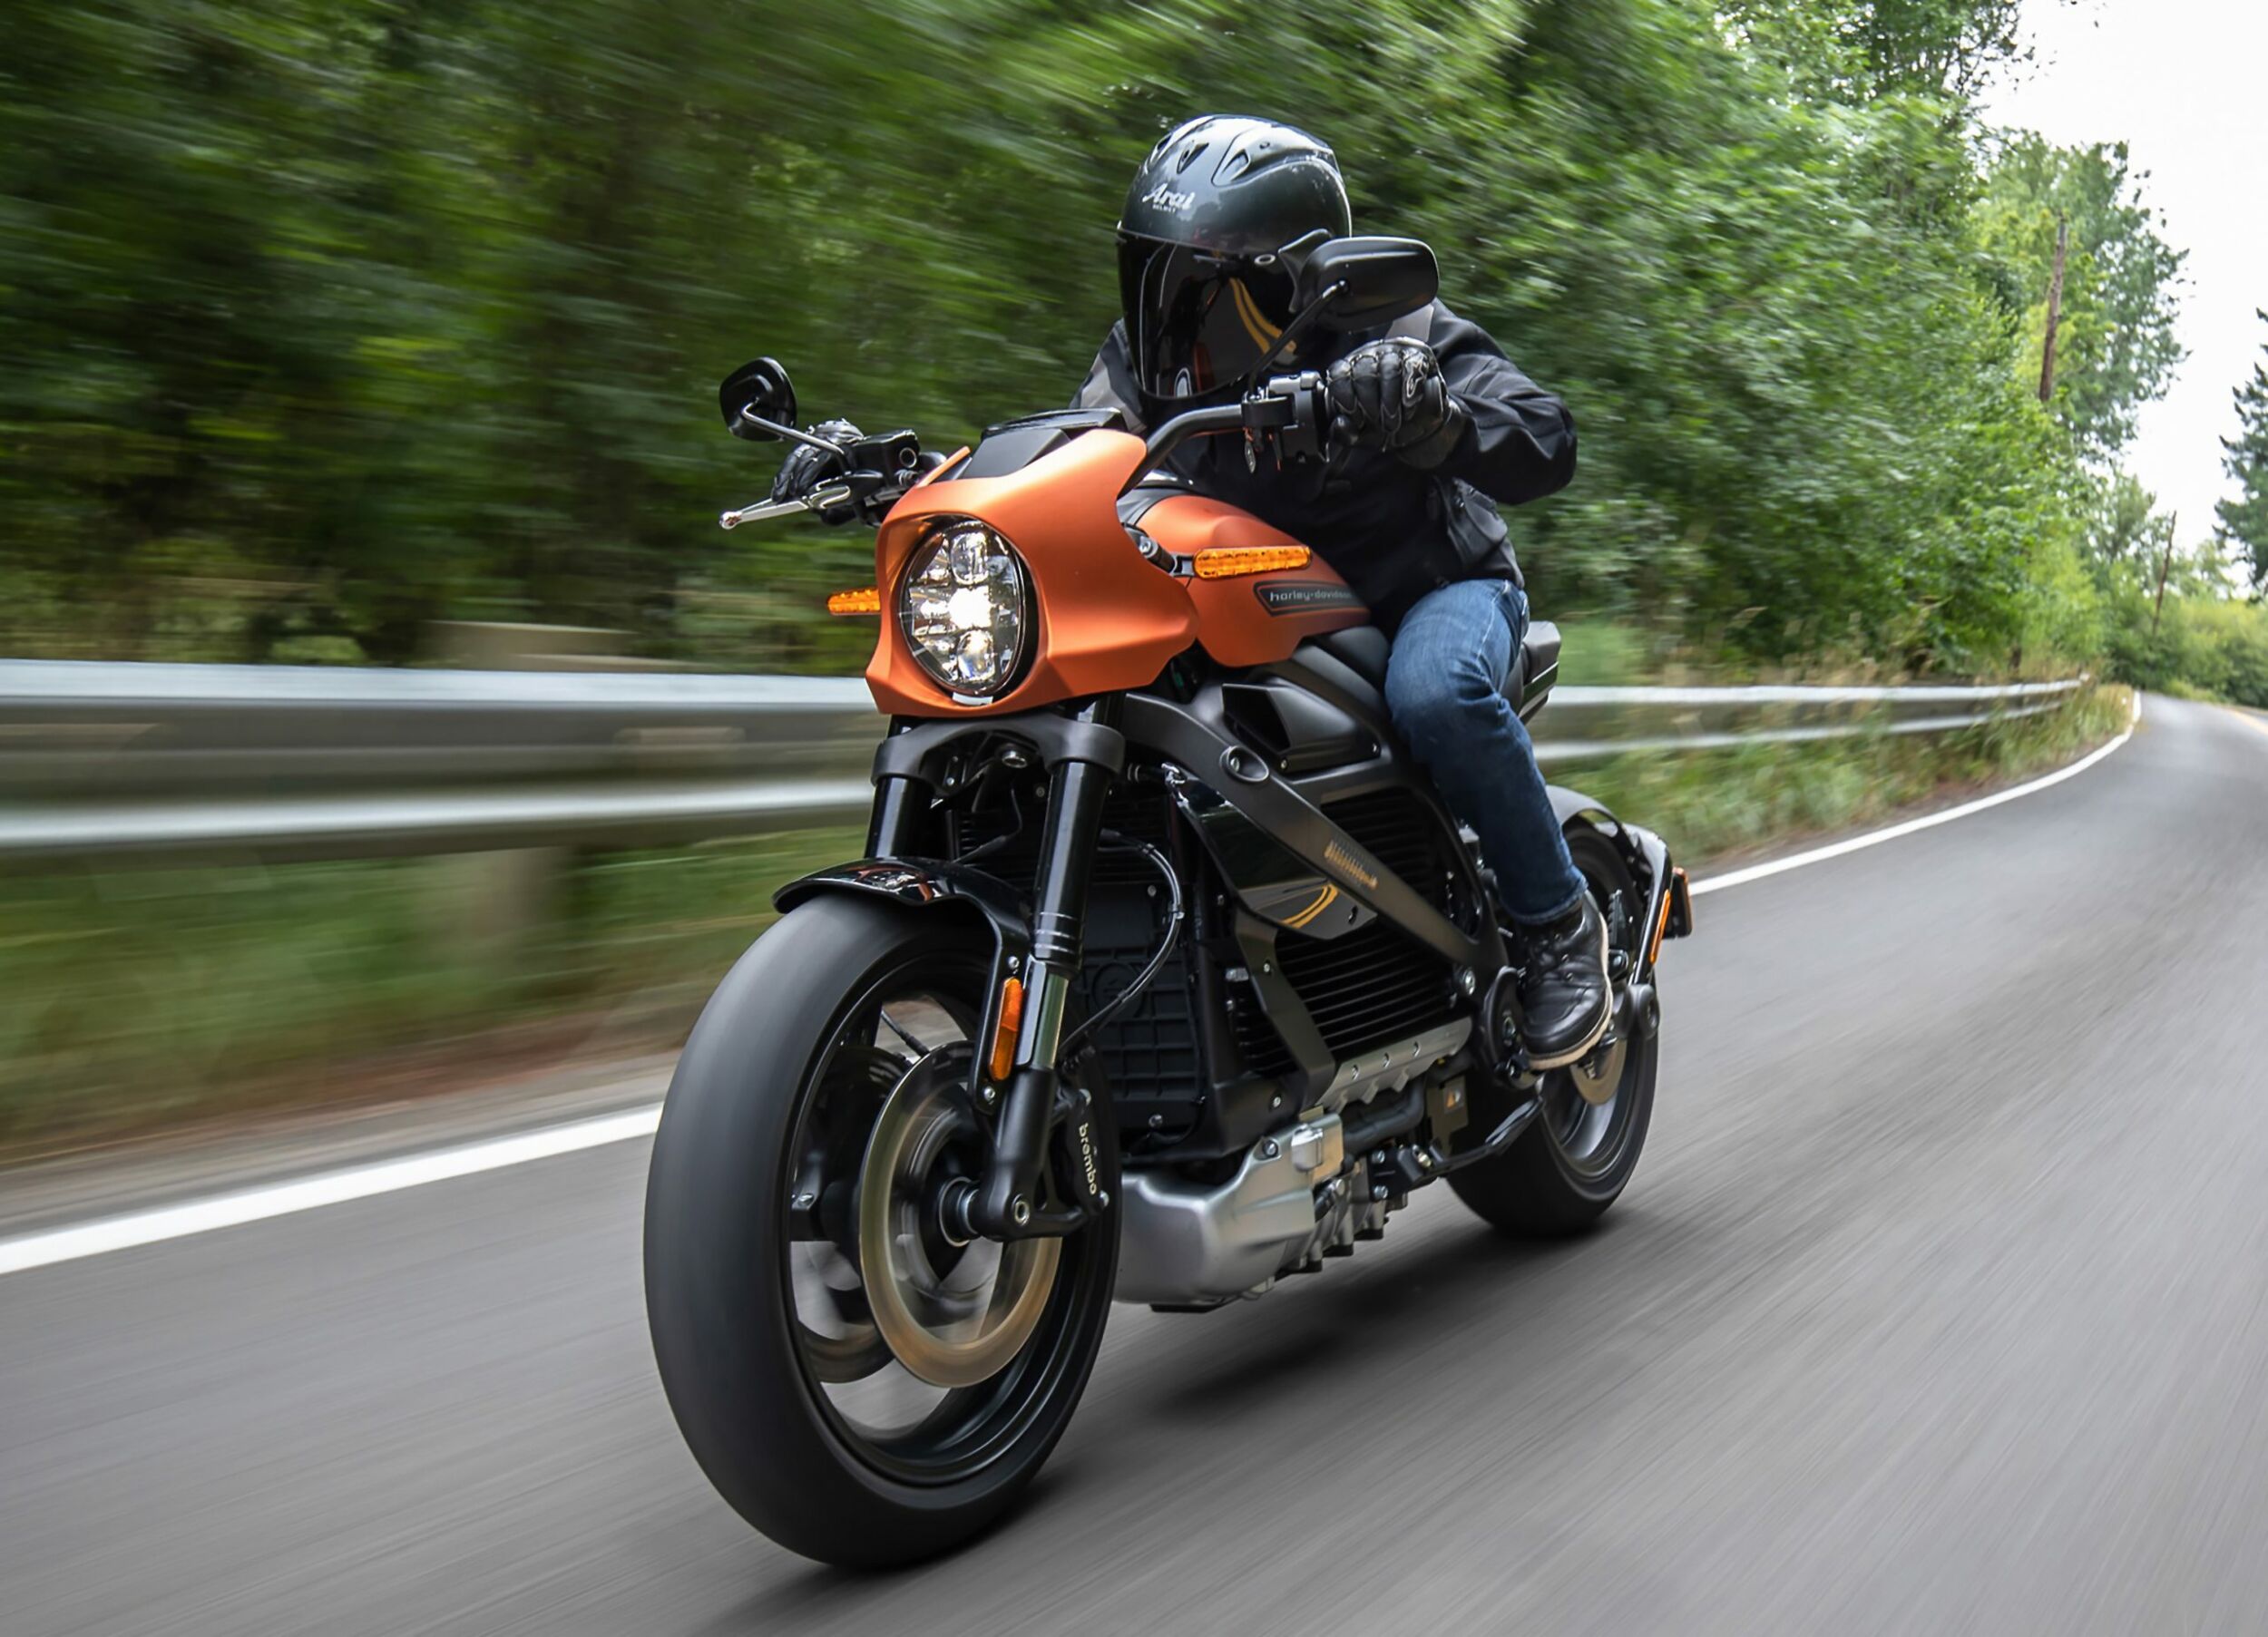 Die erste komplett elektrisch angetriebene Harley-Davidson. Dahinter steht eine Internet of Things-Infrastruktur, die zahlreiche digitale Dienste und Optimierungsmöglichkeiten bietet. (Bild: Harley-Davidson Germany GmbH)